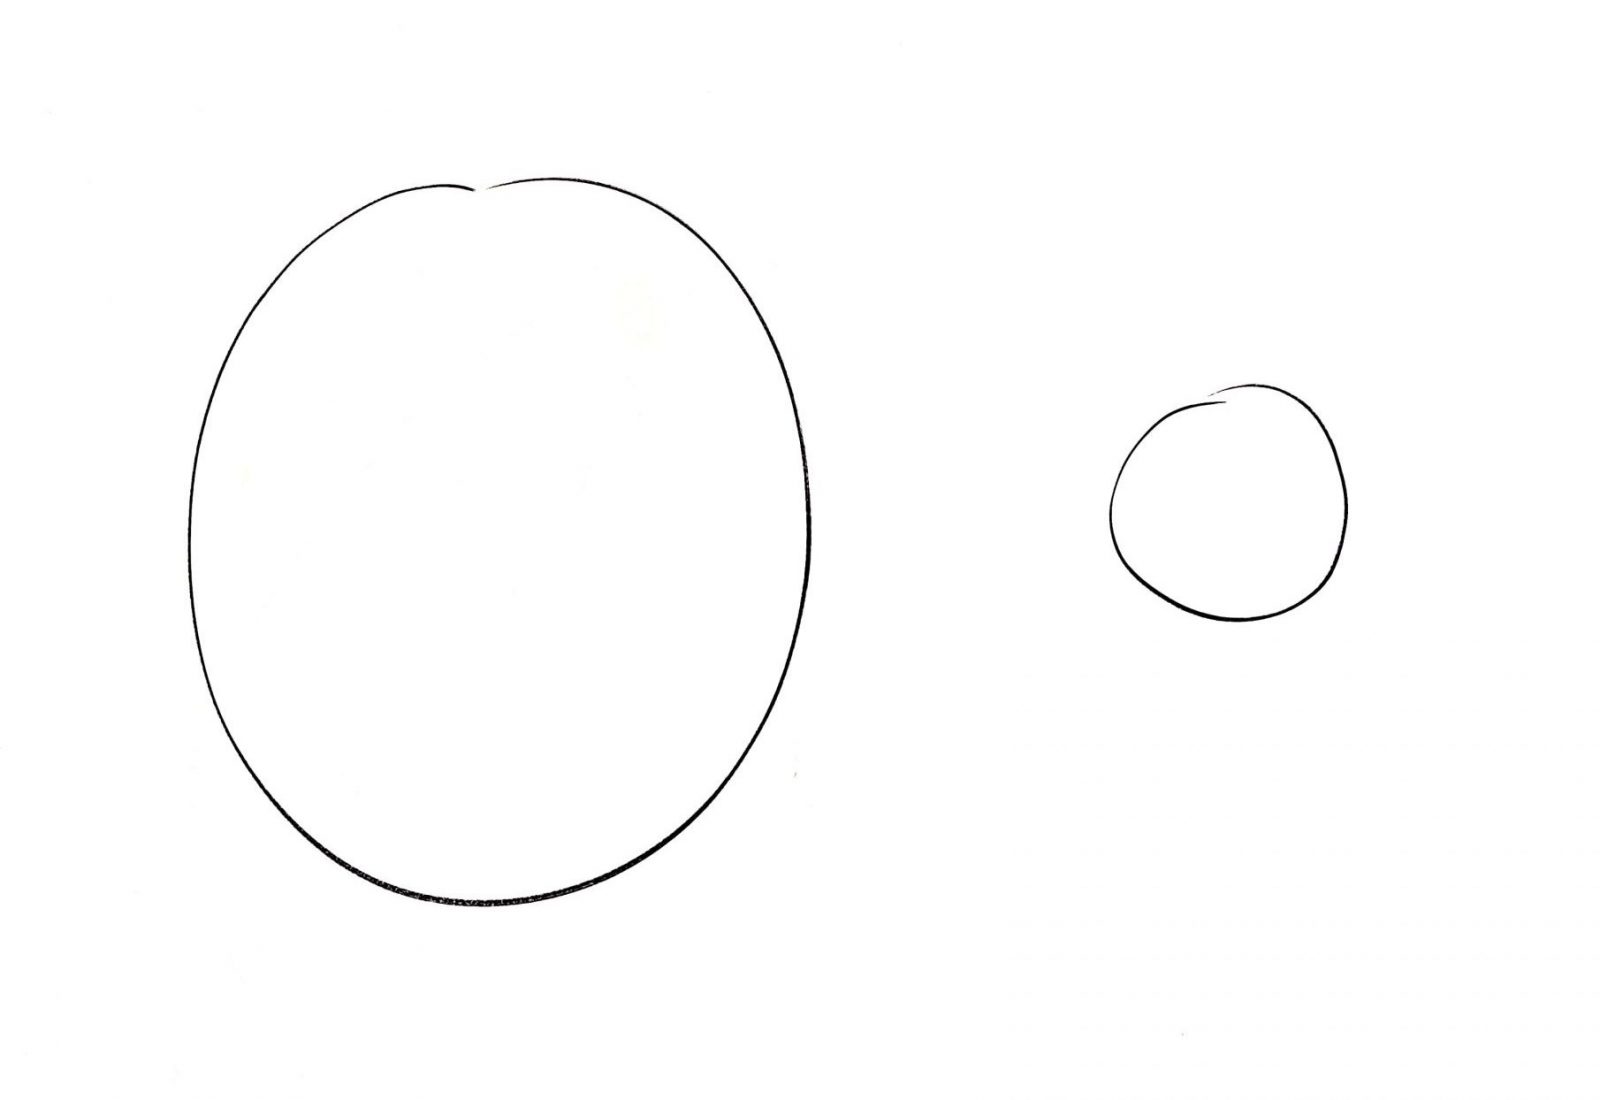 Innere Anteile: Ein großer und ein kleiner Kreis.